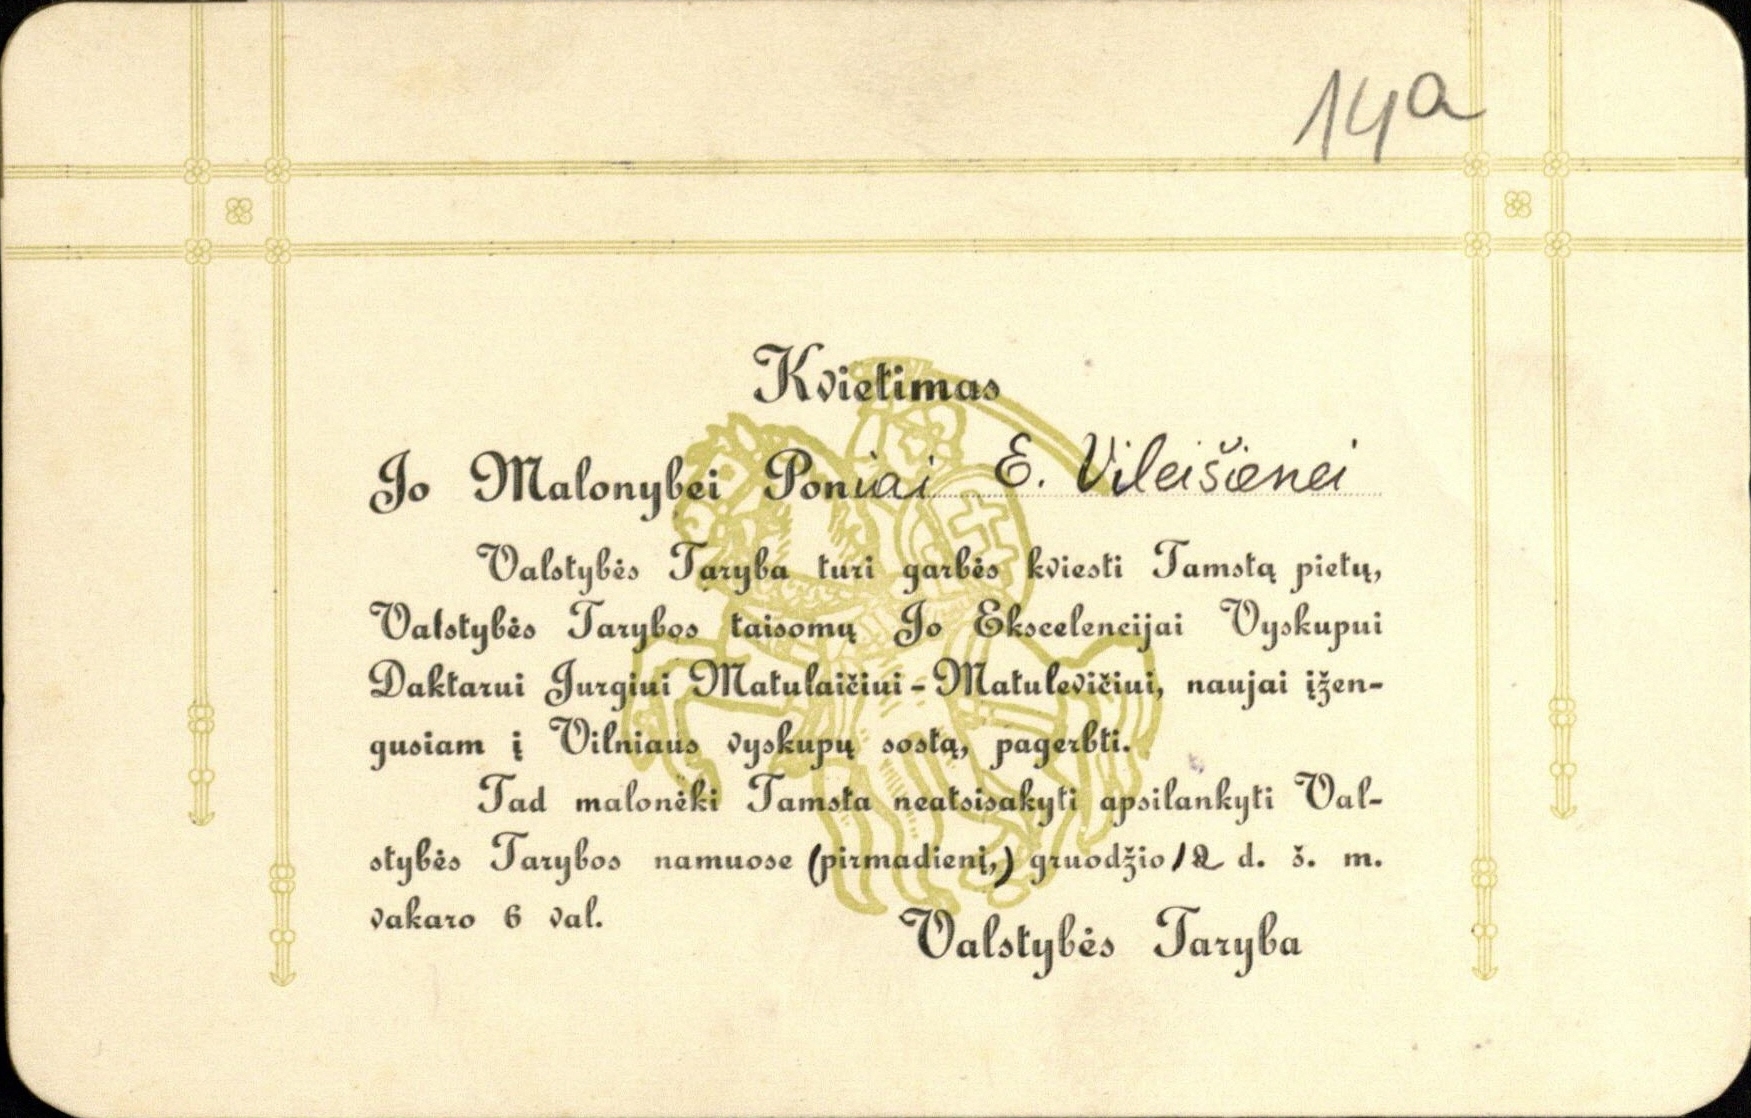 Valstybės Tarybos kvietimas E. Vileišienei į iškilmingus pietus, vyskupui J. Matulaičiui pagerbti. [1918 12 12]